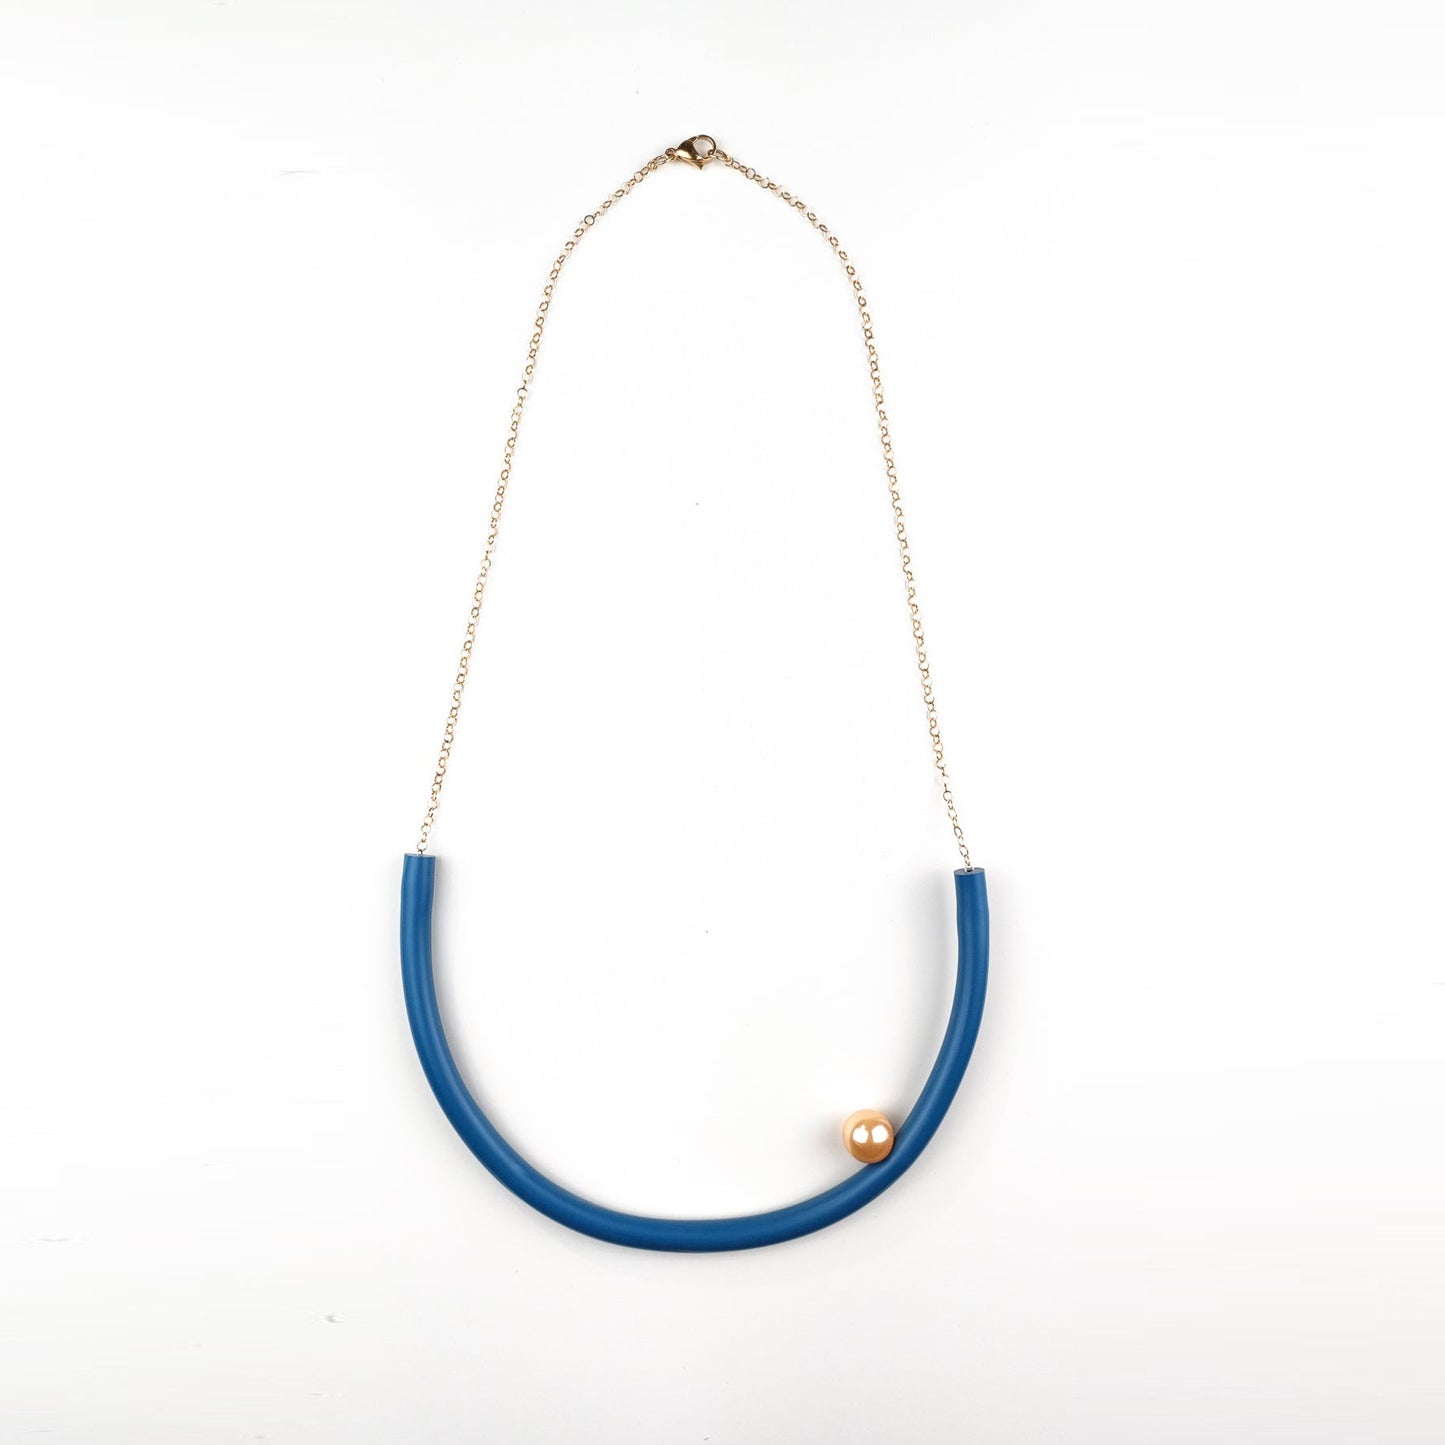 BILICO round necklace - blue avio / white pearl